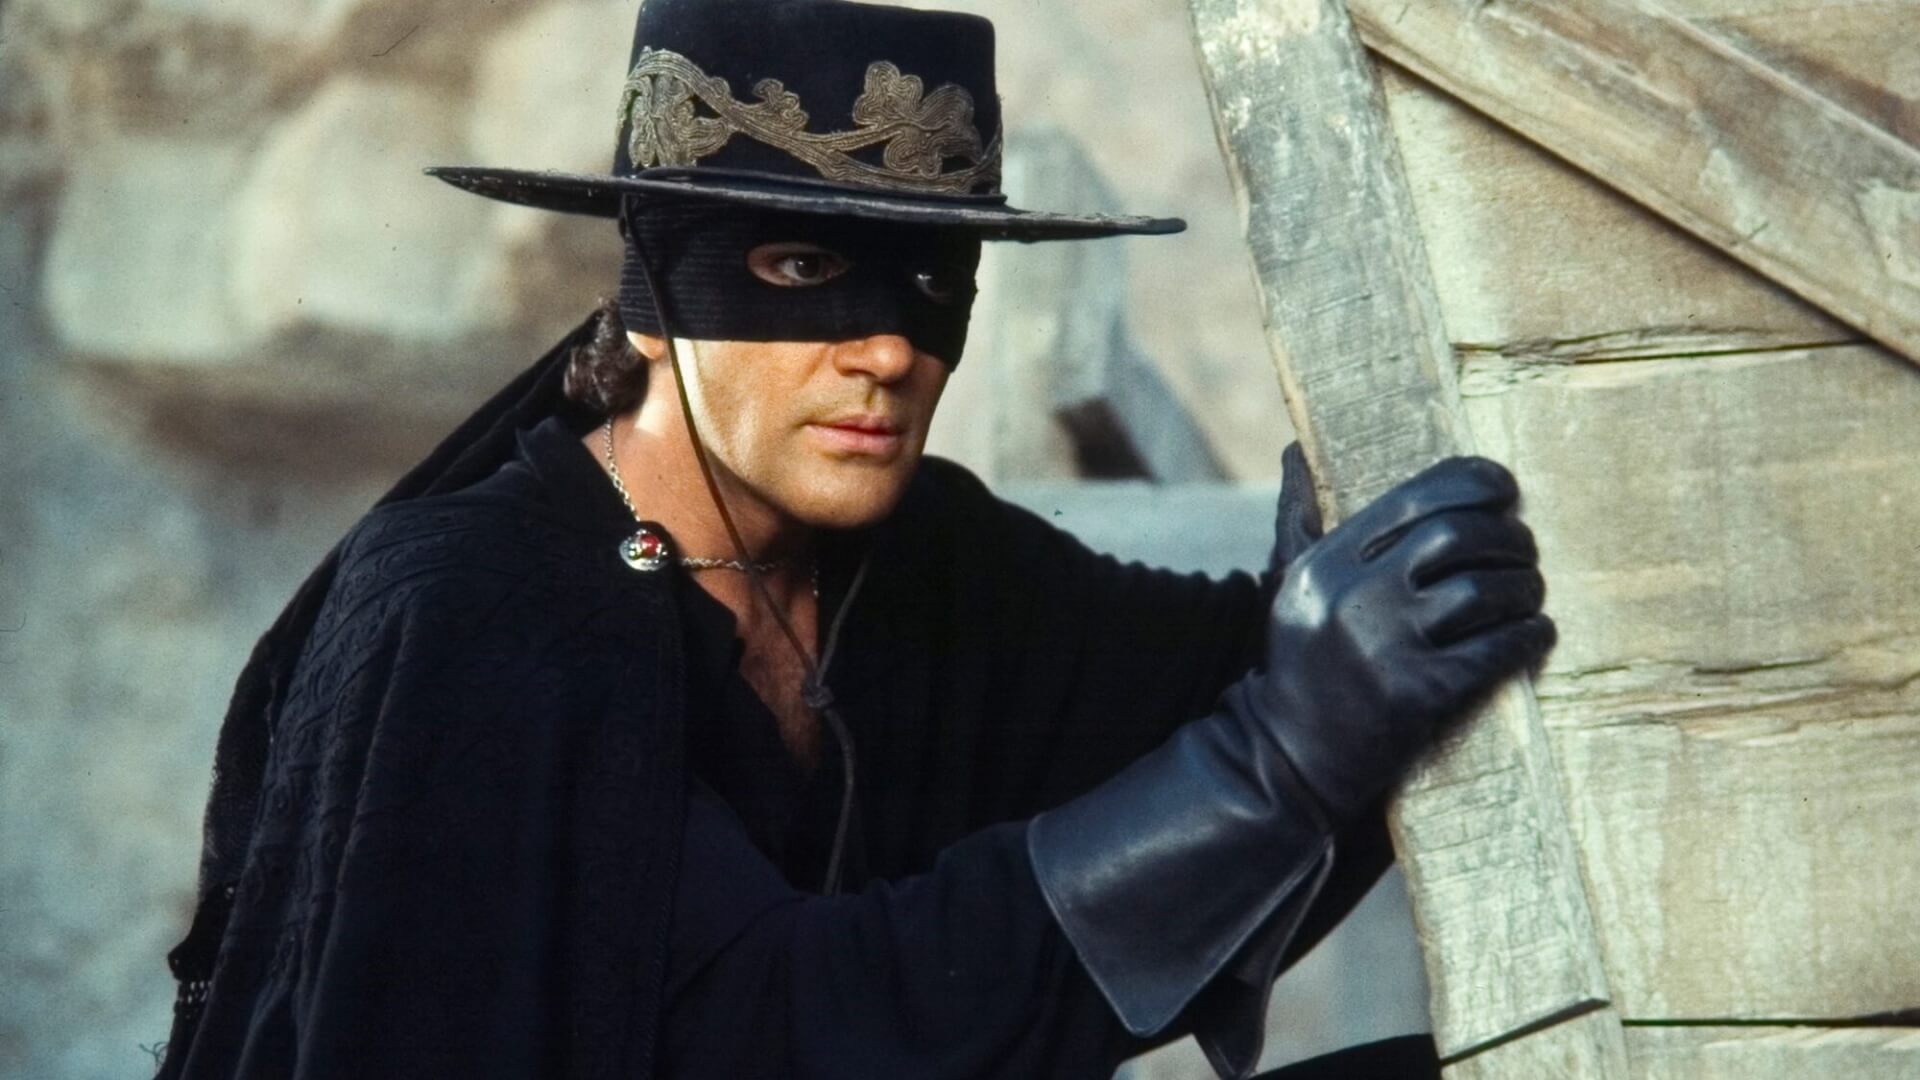 Antonio Banderes egyszer még visszatérne Zorroként, csakhogy átadja valakinek a stafétabotot